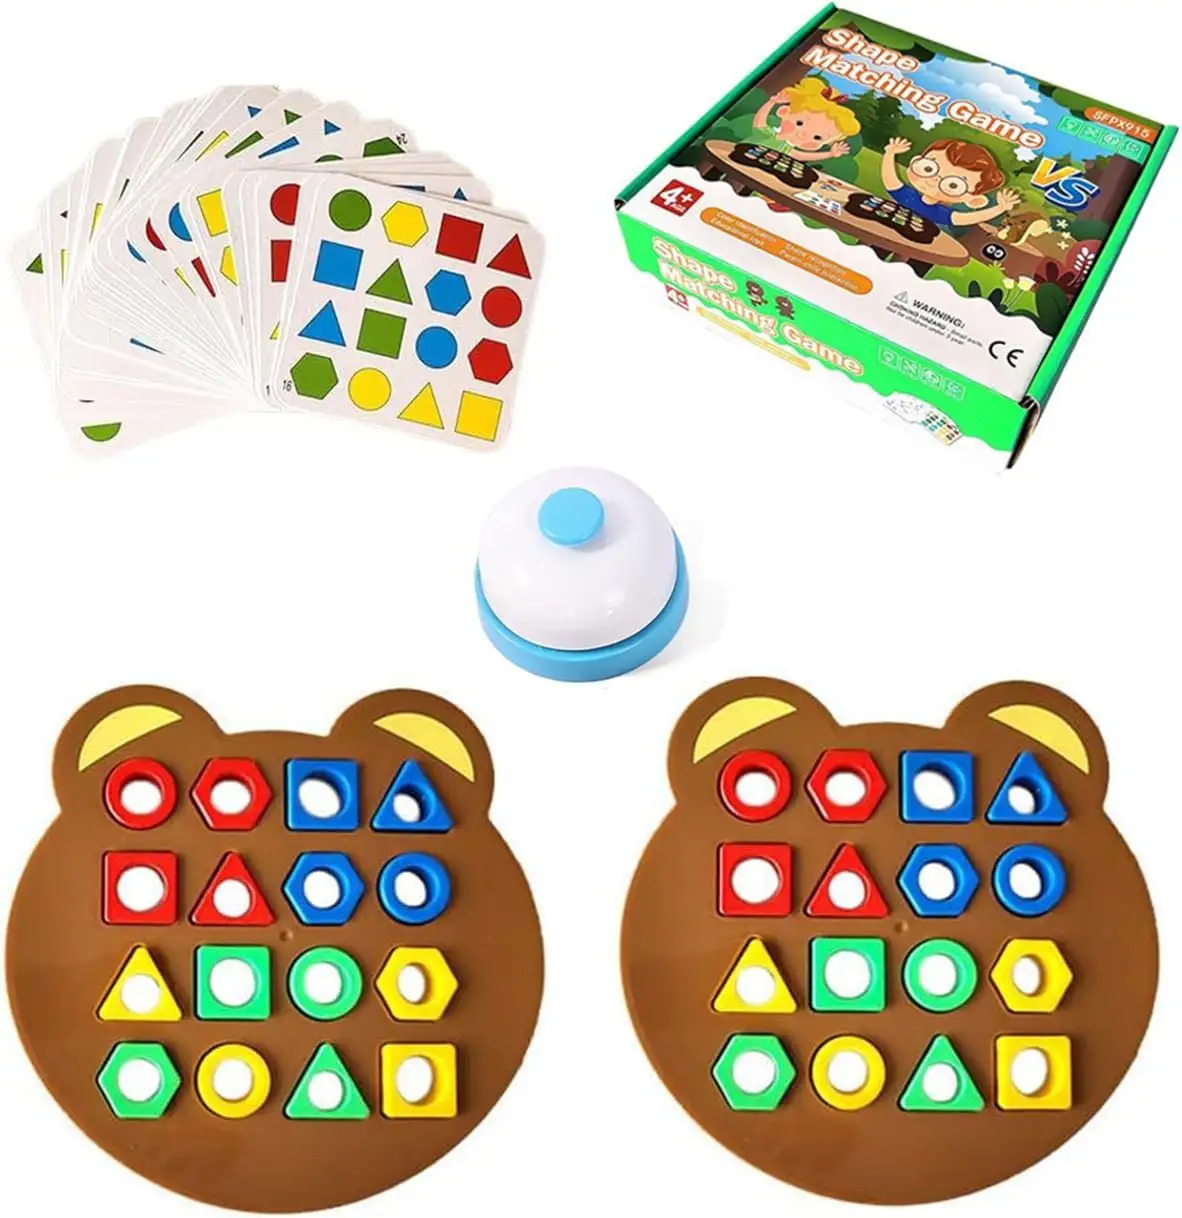 Juego de combinación de colores con formas, rompecabezas, tablero a juego geométrico, tablero de ajedrez en forma de oso, juego de mesa interactivo para niños